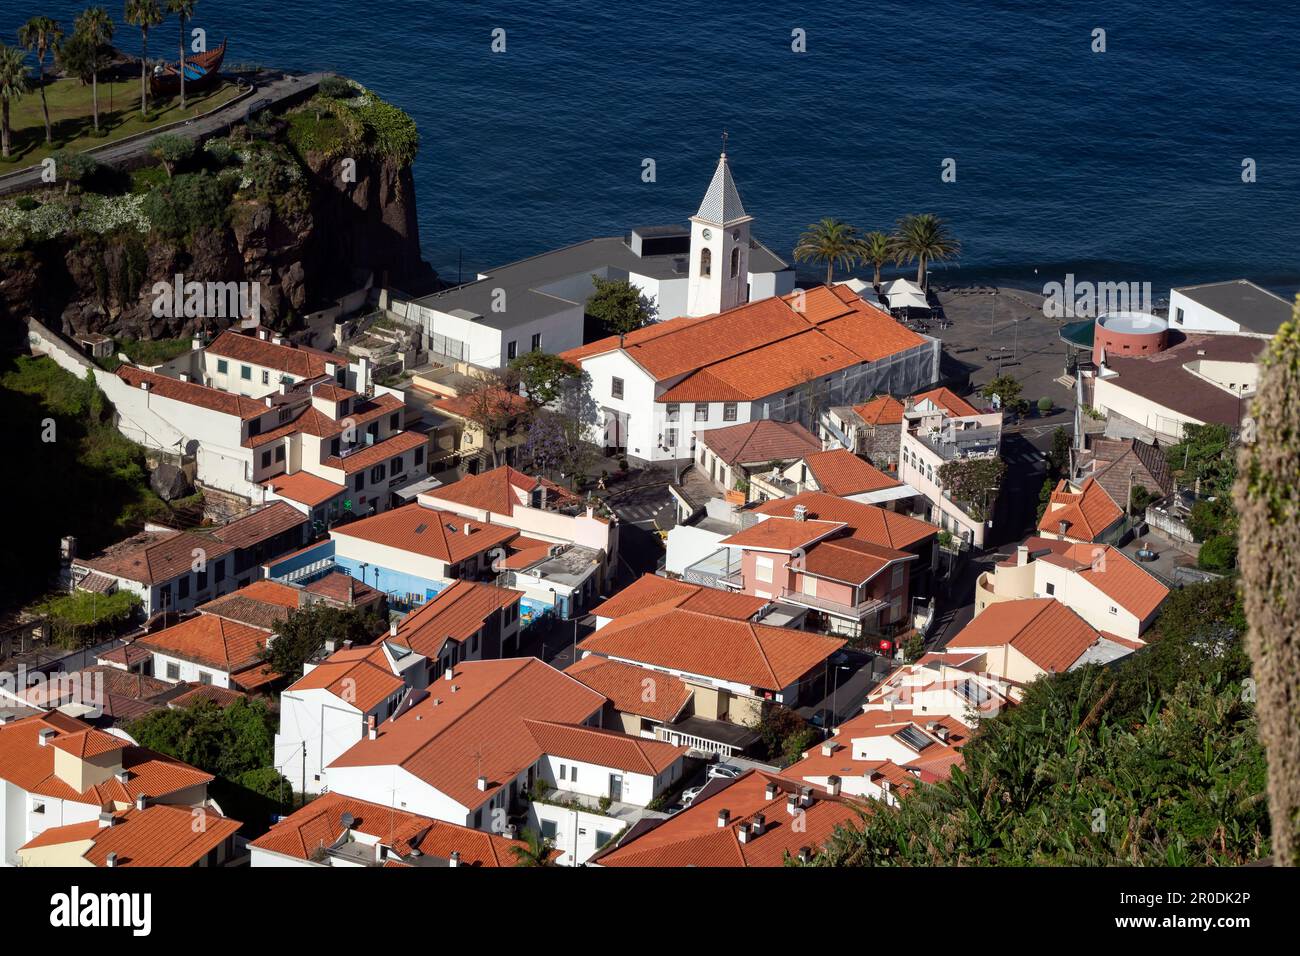 The Village of Câmara de Lobos, Madeira, Portugal Stock Photo